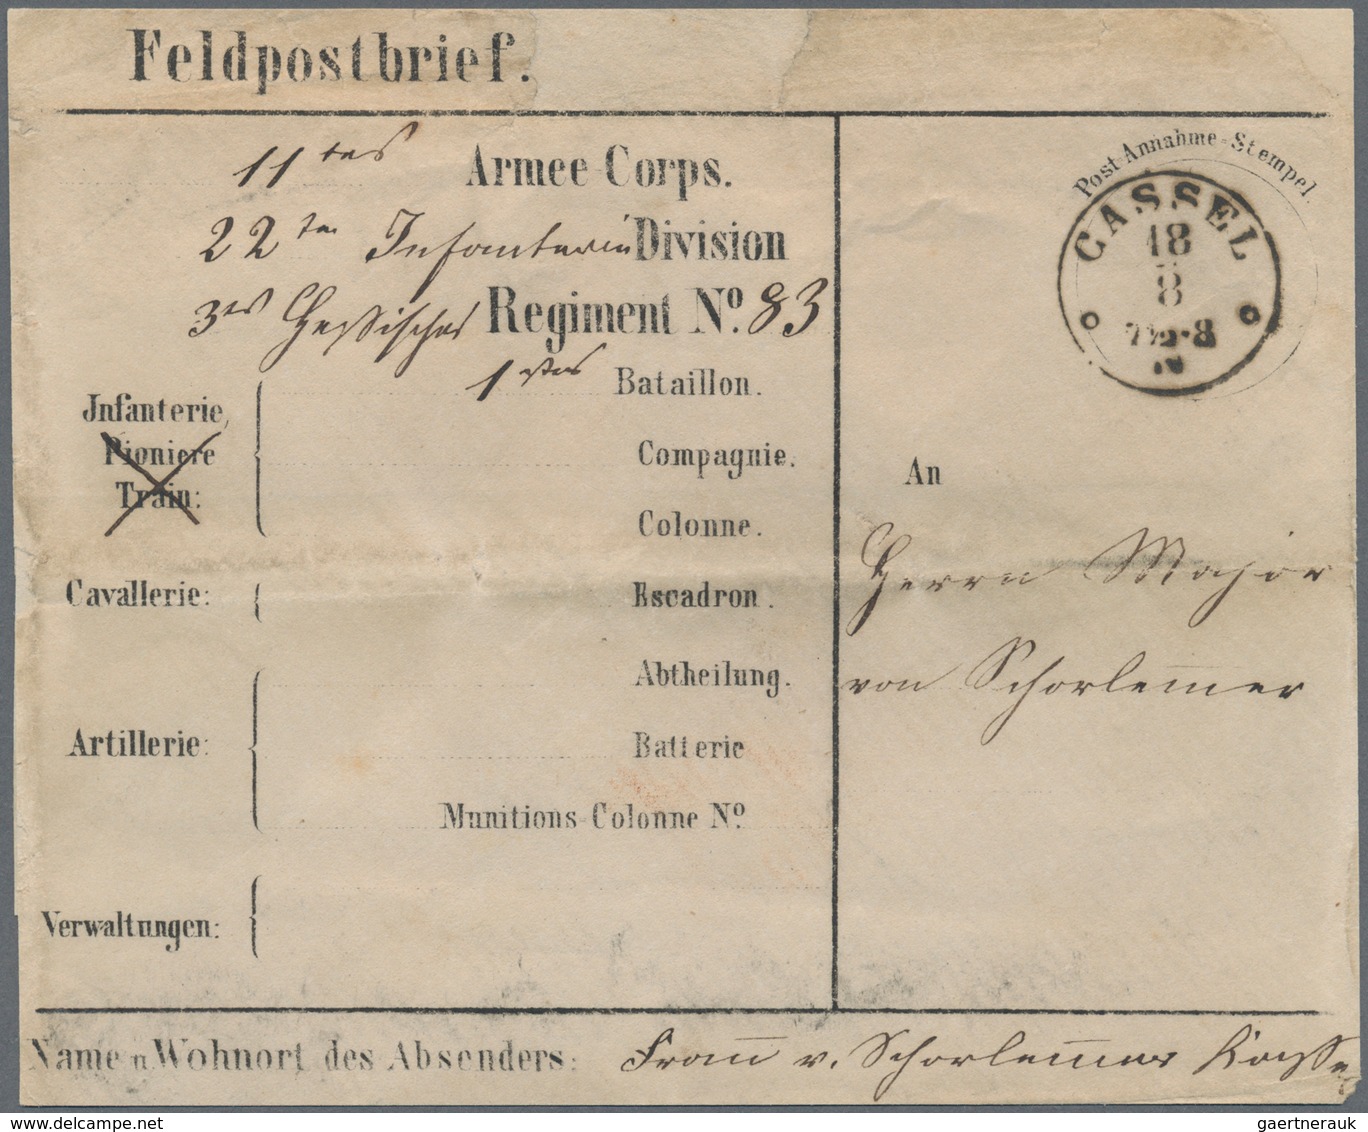 Preußen - Feldpost: 1870-1871 (ca.), DEUTSCH-FRANZ. KRIEG, herausragende Sammlung von ca. 155 Belege